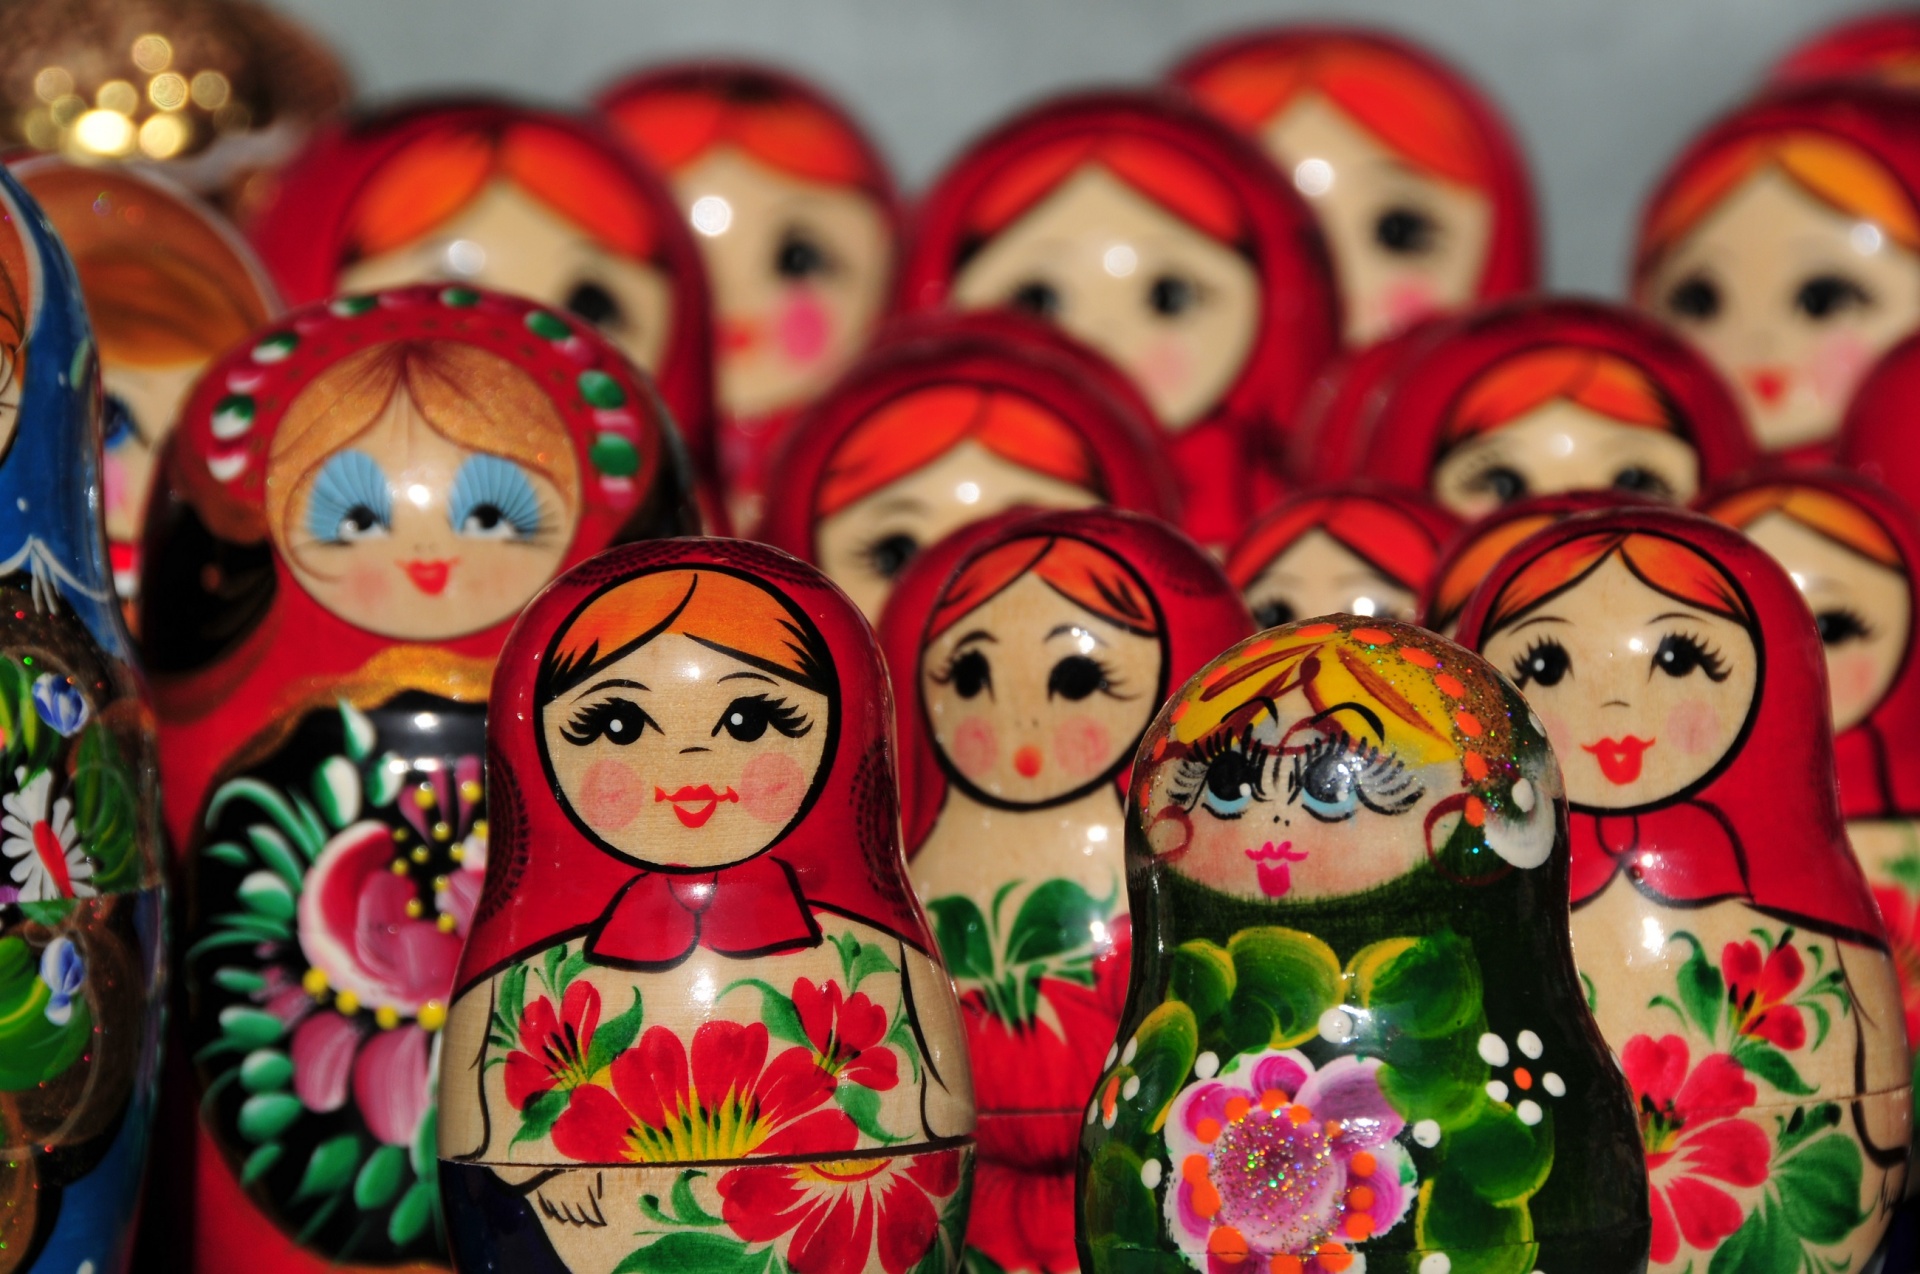 Colorful Nesting Matryoshka Dolls